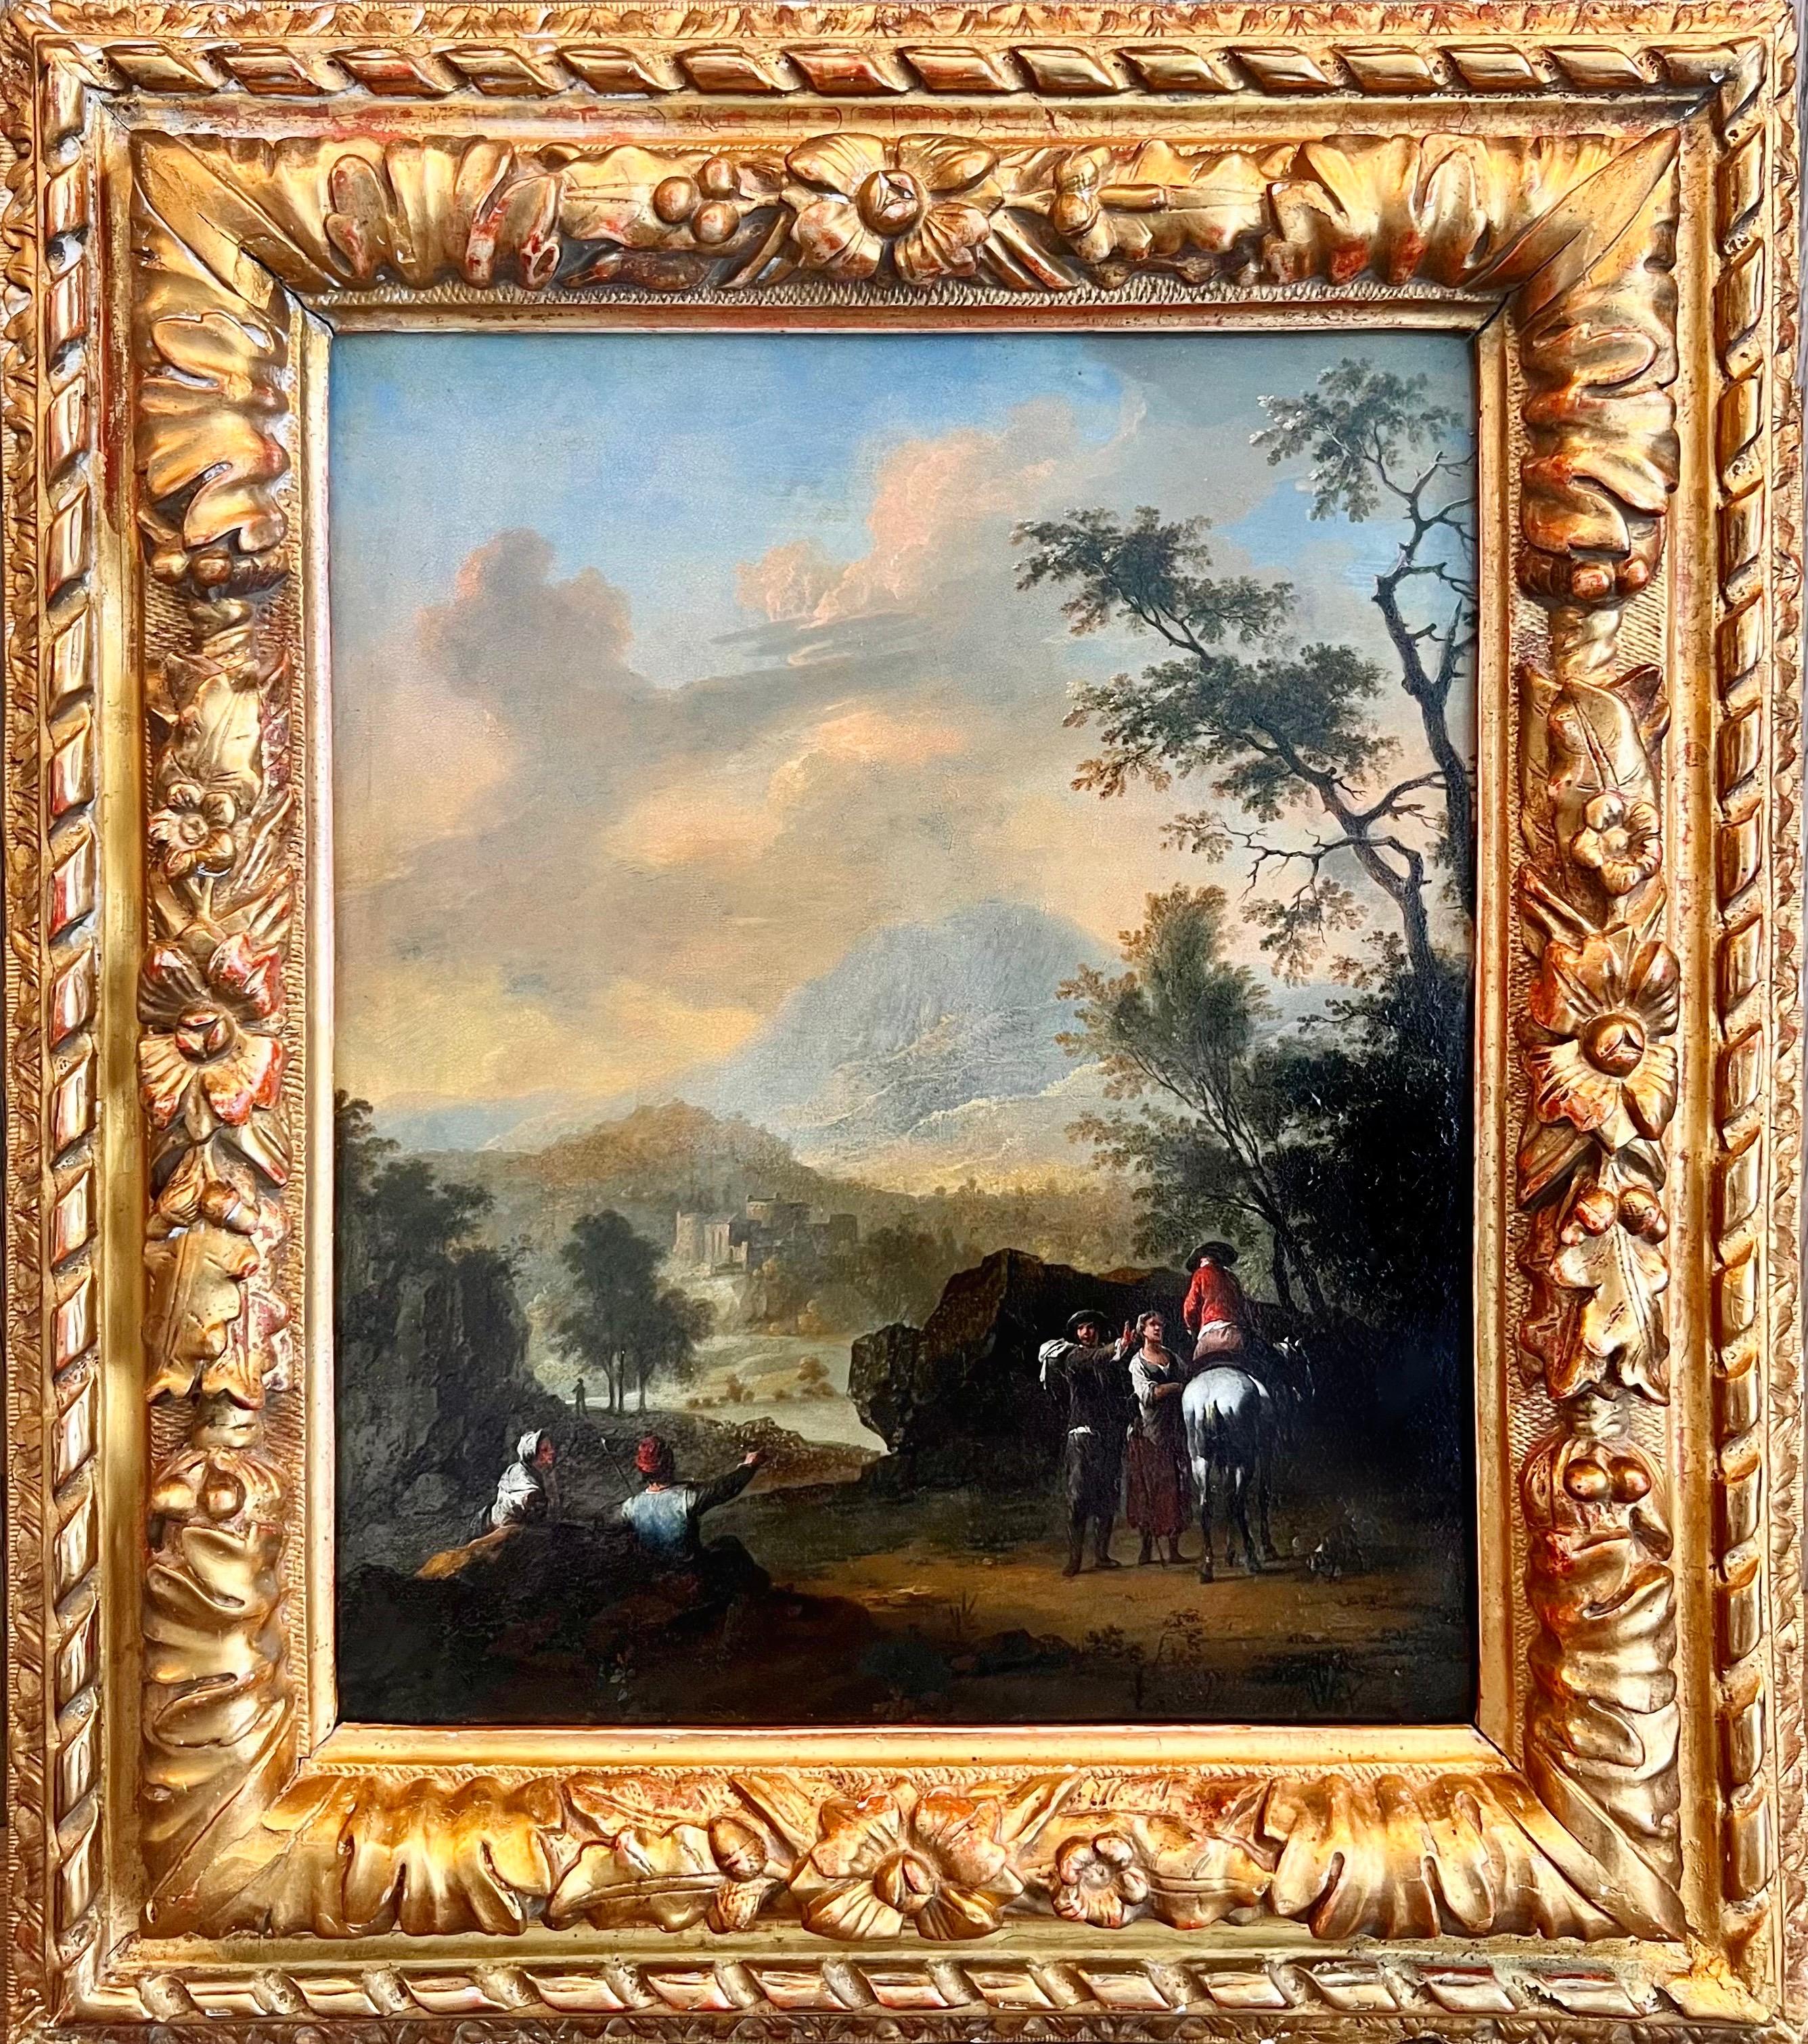 Franz Paula De Ferg Landscape Painting – Ölgemälde eines Alten Meisters aus dem 18. Jahrhundert – Reisende bei Sonnenuntergang in einer Landschaft 